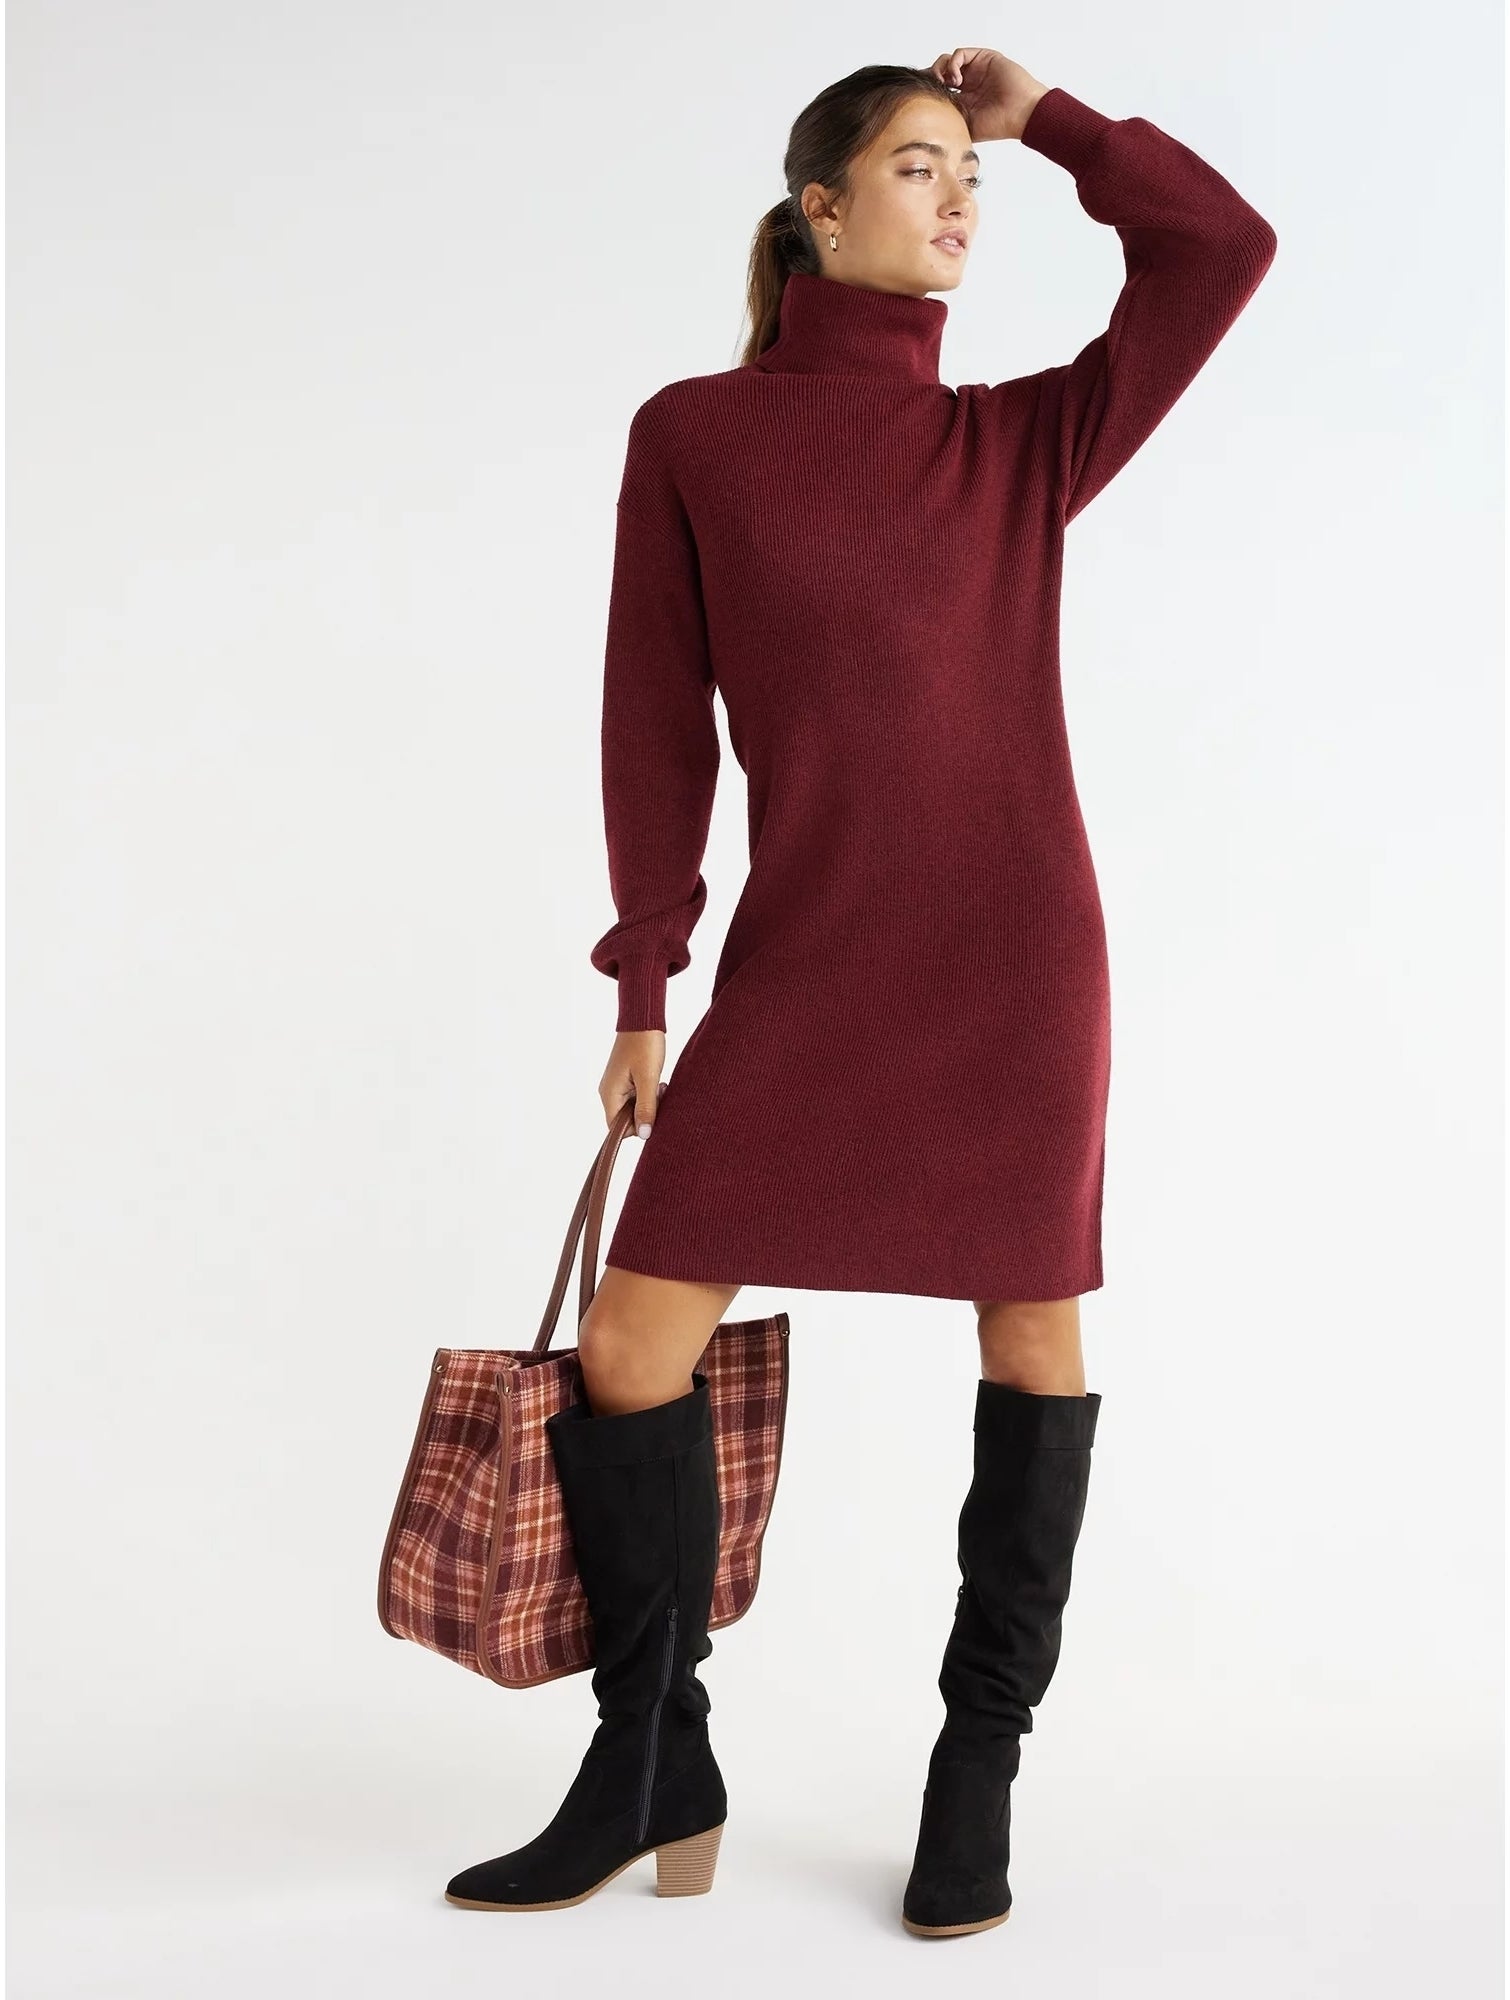 model wearing maroon turtleneck dress